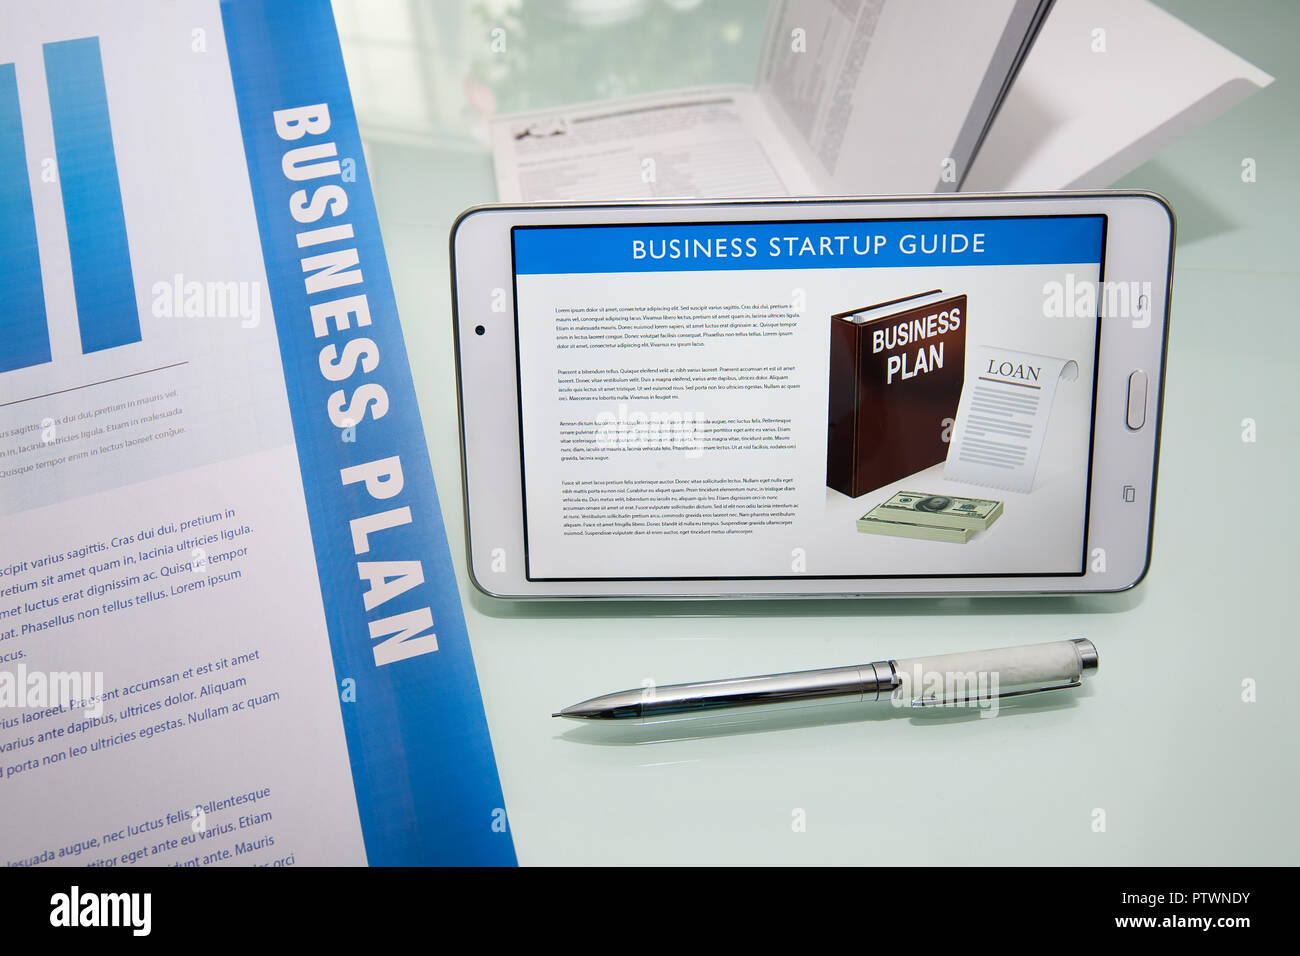 Wichtige Komponenten für eine erfolgreiche Zusammenfassung in einem Business Plan mit Marketingmaterialien, Leitfäden, Stift und Tablett oder digitale Anzeige. Stockfoto